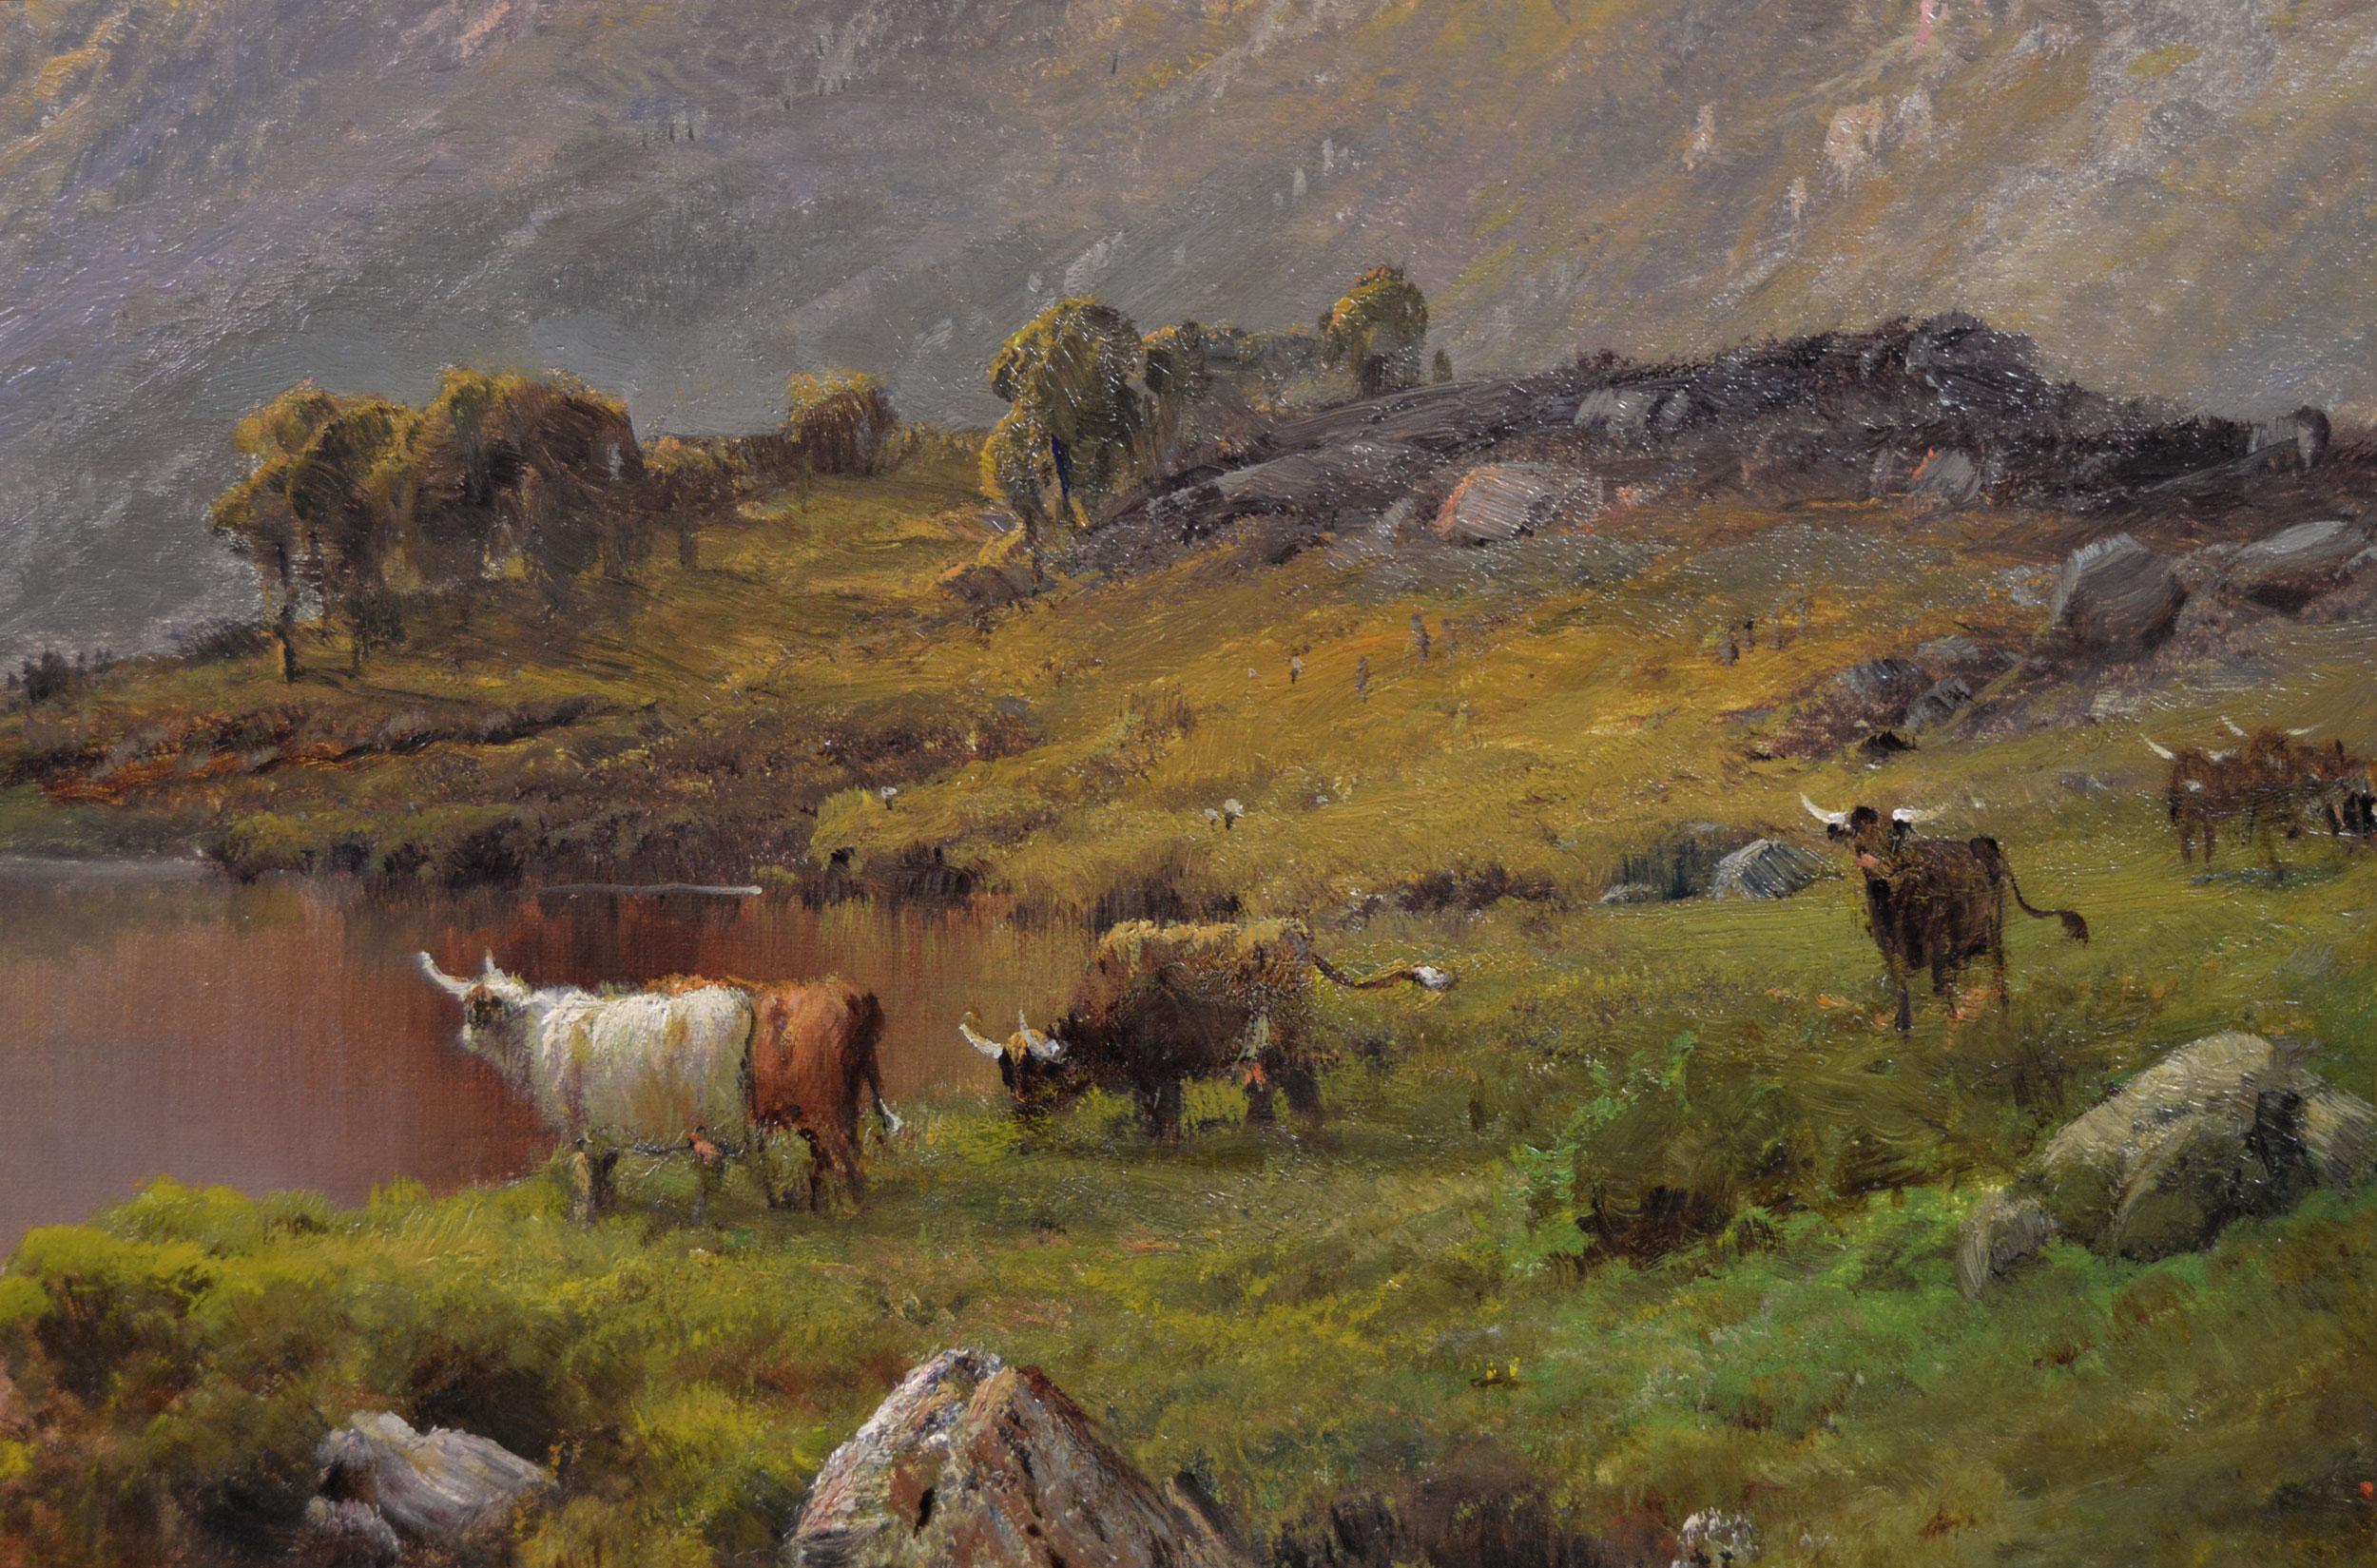 Alfred de Breanski Snr
Britannique, (1852-1928)
La tête du Loch Lubnaig
Huile sur toile, signée et transcrite au verso
Taille de l'image : 23,5 pouces x 35,5 pouces 
Dimensions, y compris le cadre : 32.25 pouces x 44.25 pouces

Une superbe peinture